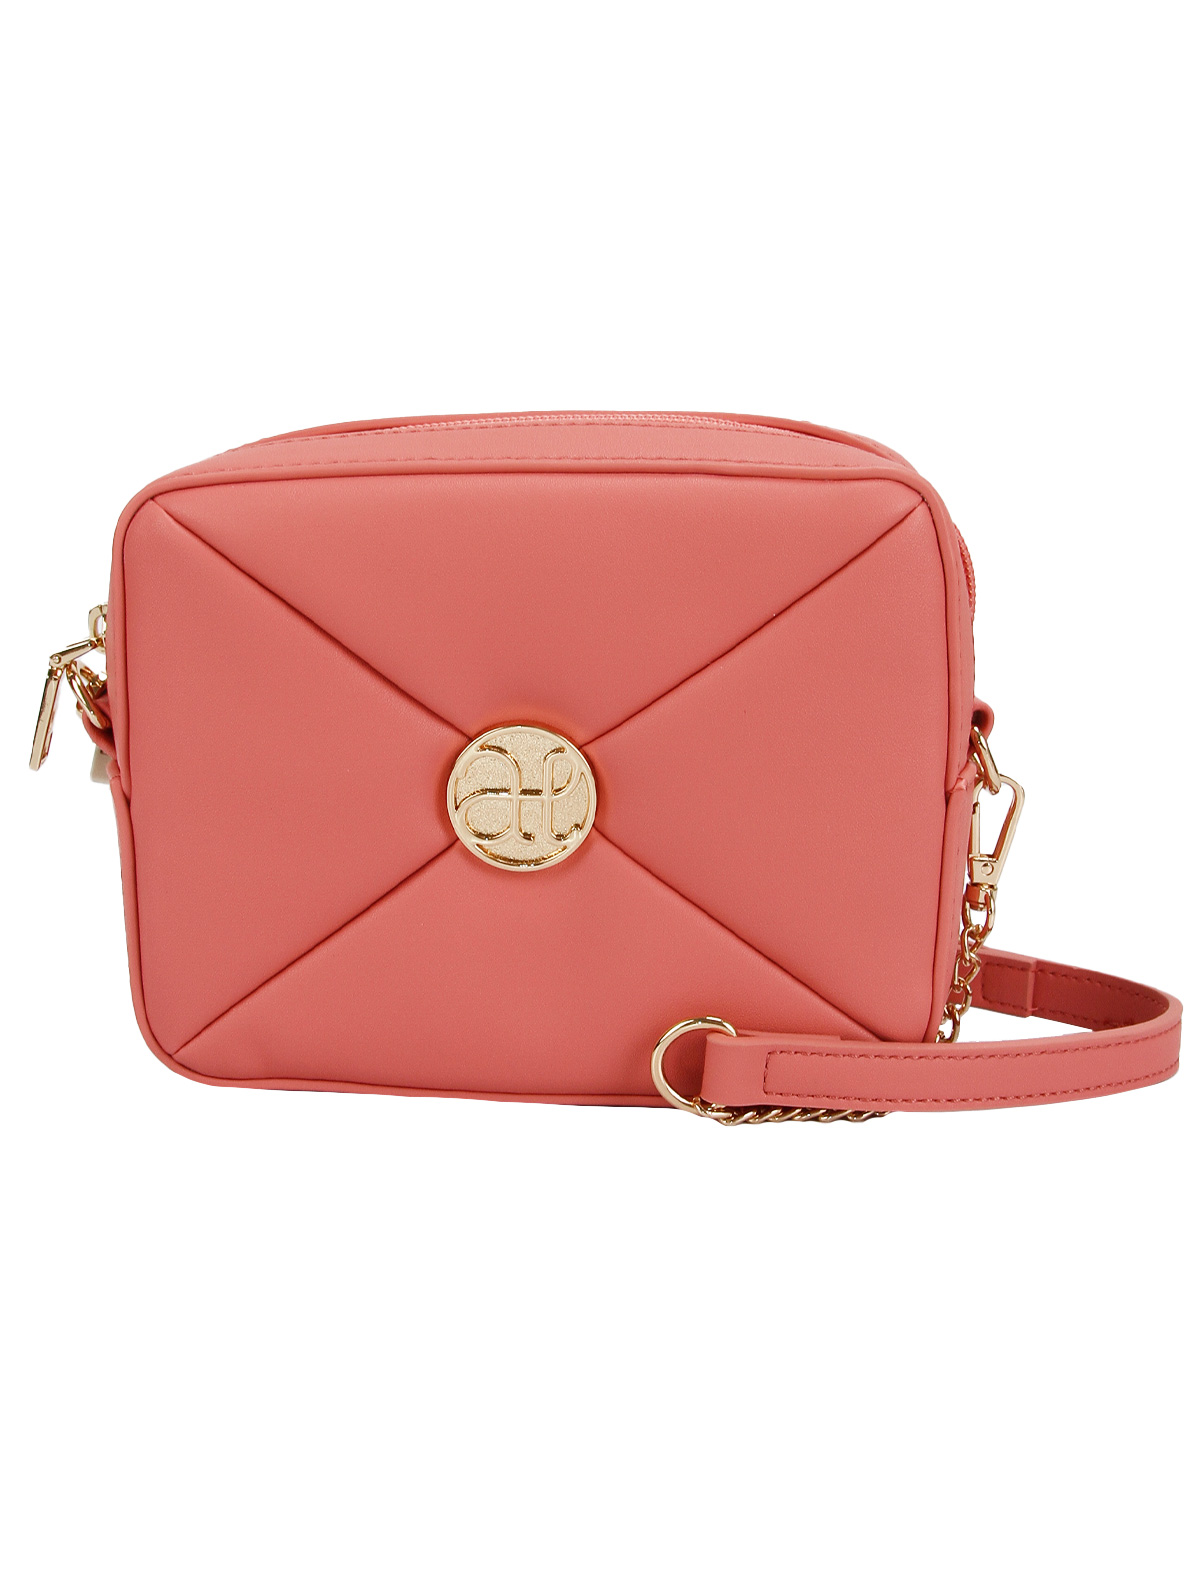 сумка abel & lula для девочки, розовая